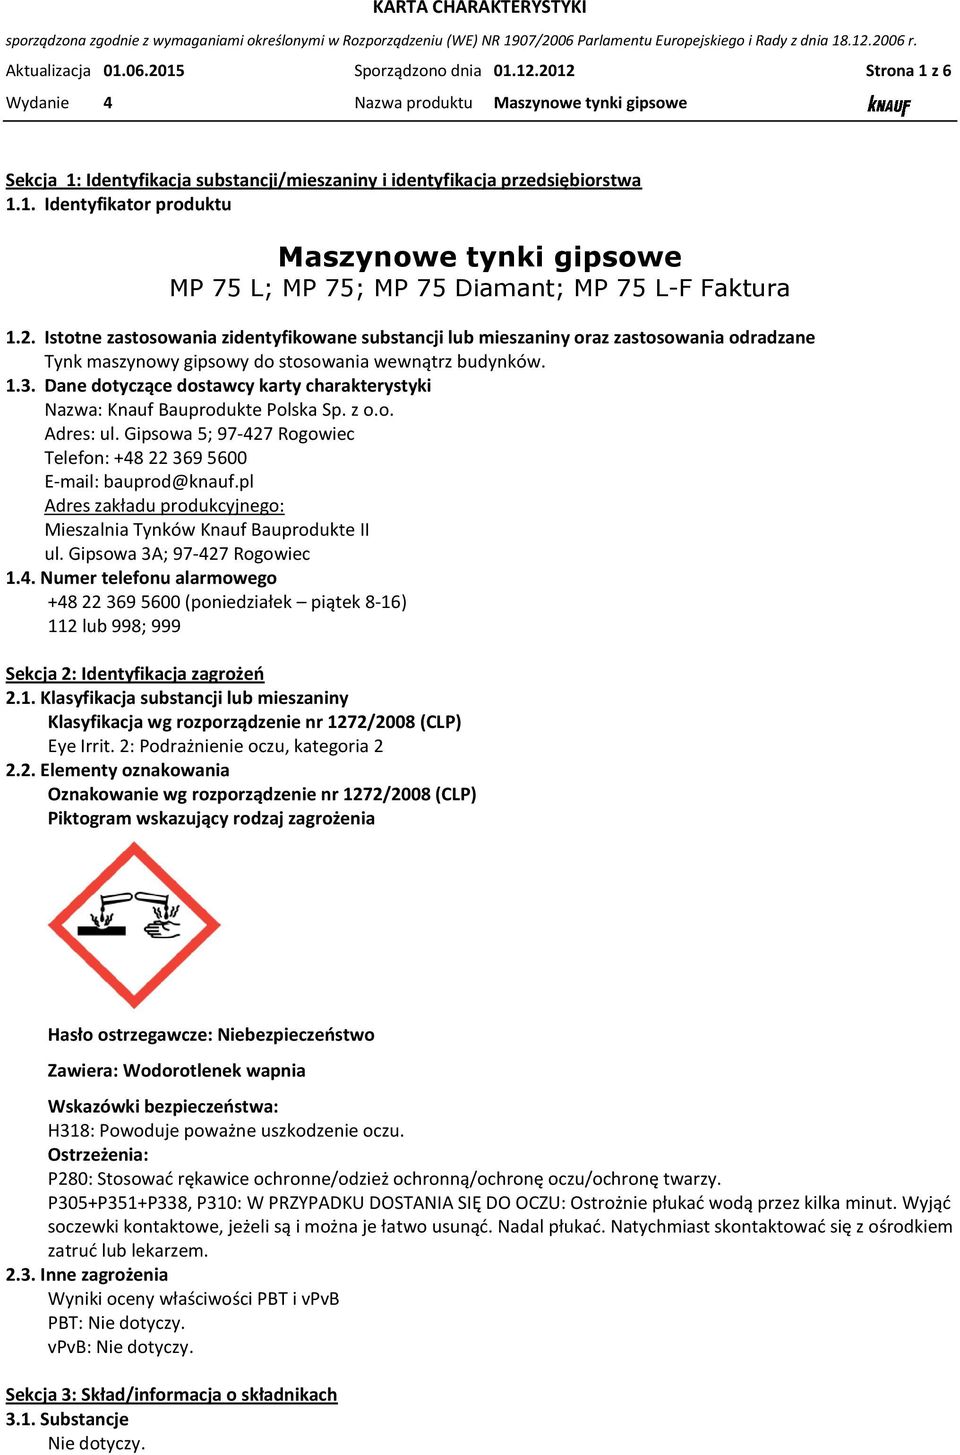 Dane dotyczące dostawcy karty charakterystyki Nazwa: Knauf Bauprodukte Polska Sp. z o.o. Adres: ul. Gipsowa 5; 97-427 Rogowiec Telefon: +48 22 369 5600 E-mail: bauprod@knauf.